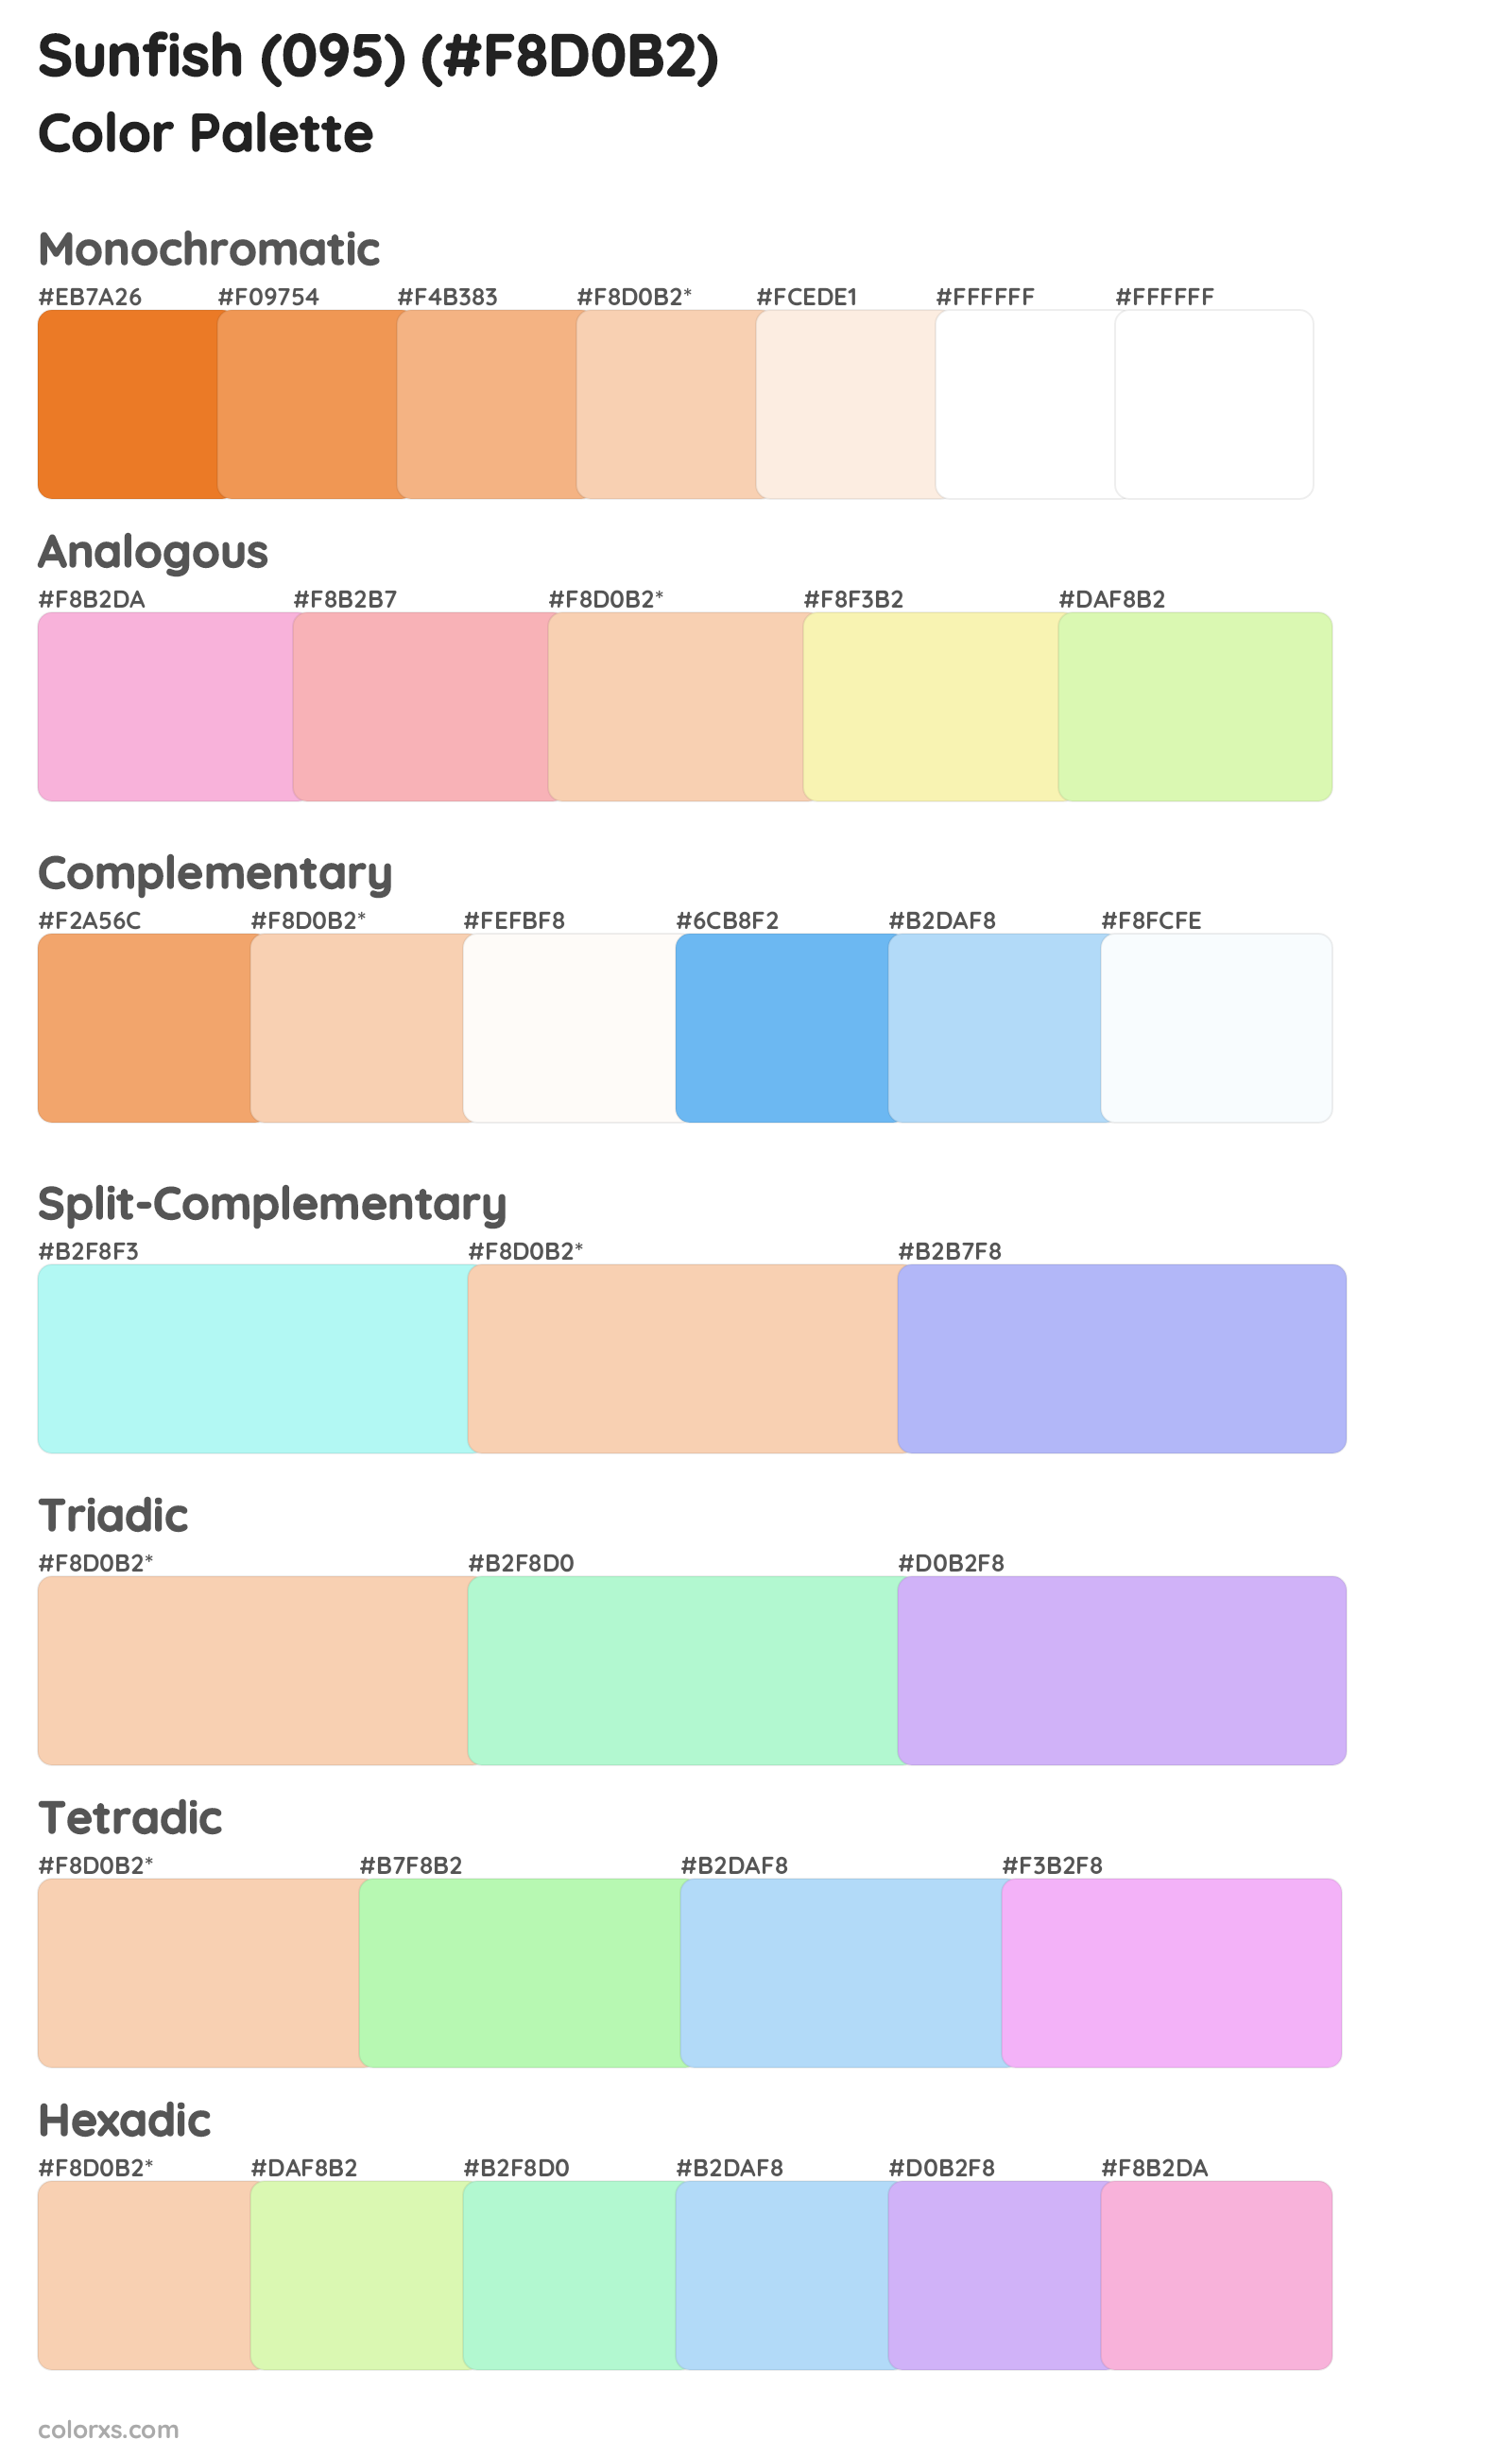 Sunfish (095) Color Scheme Palettes